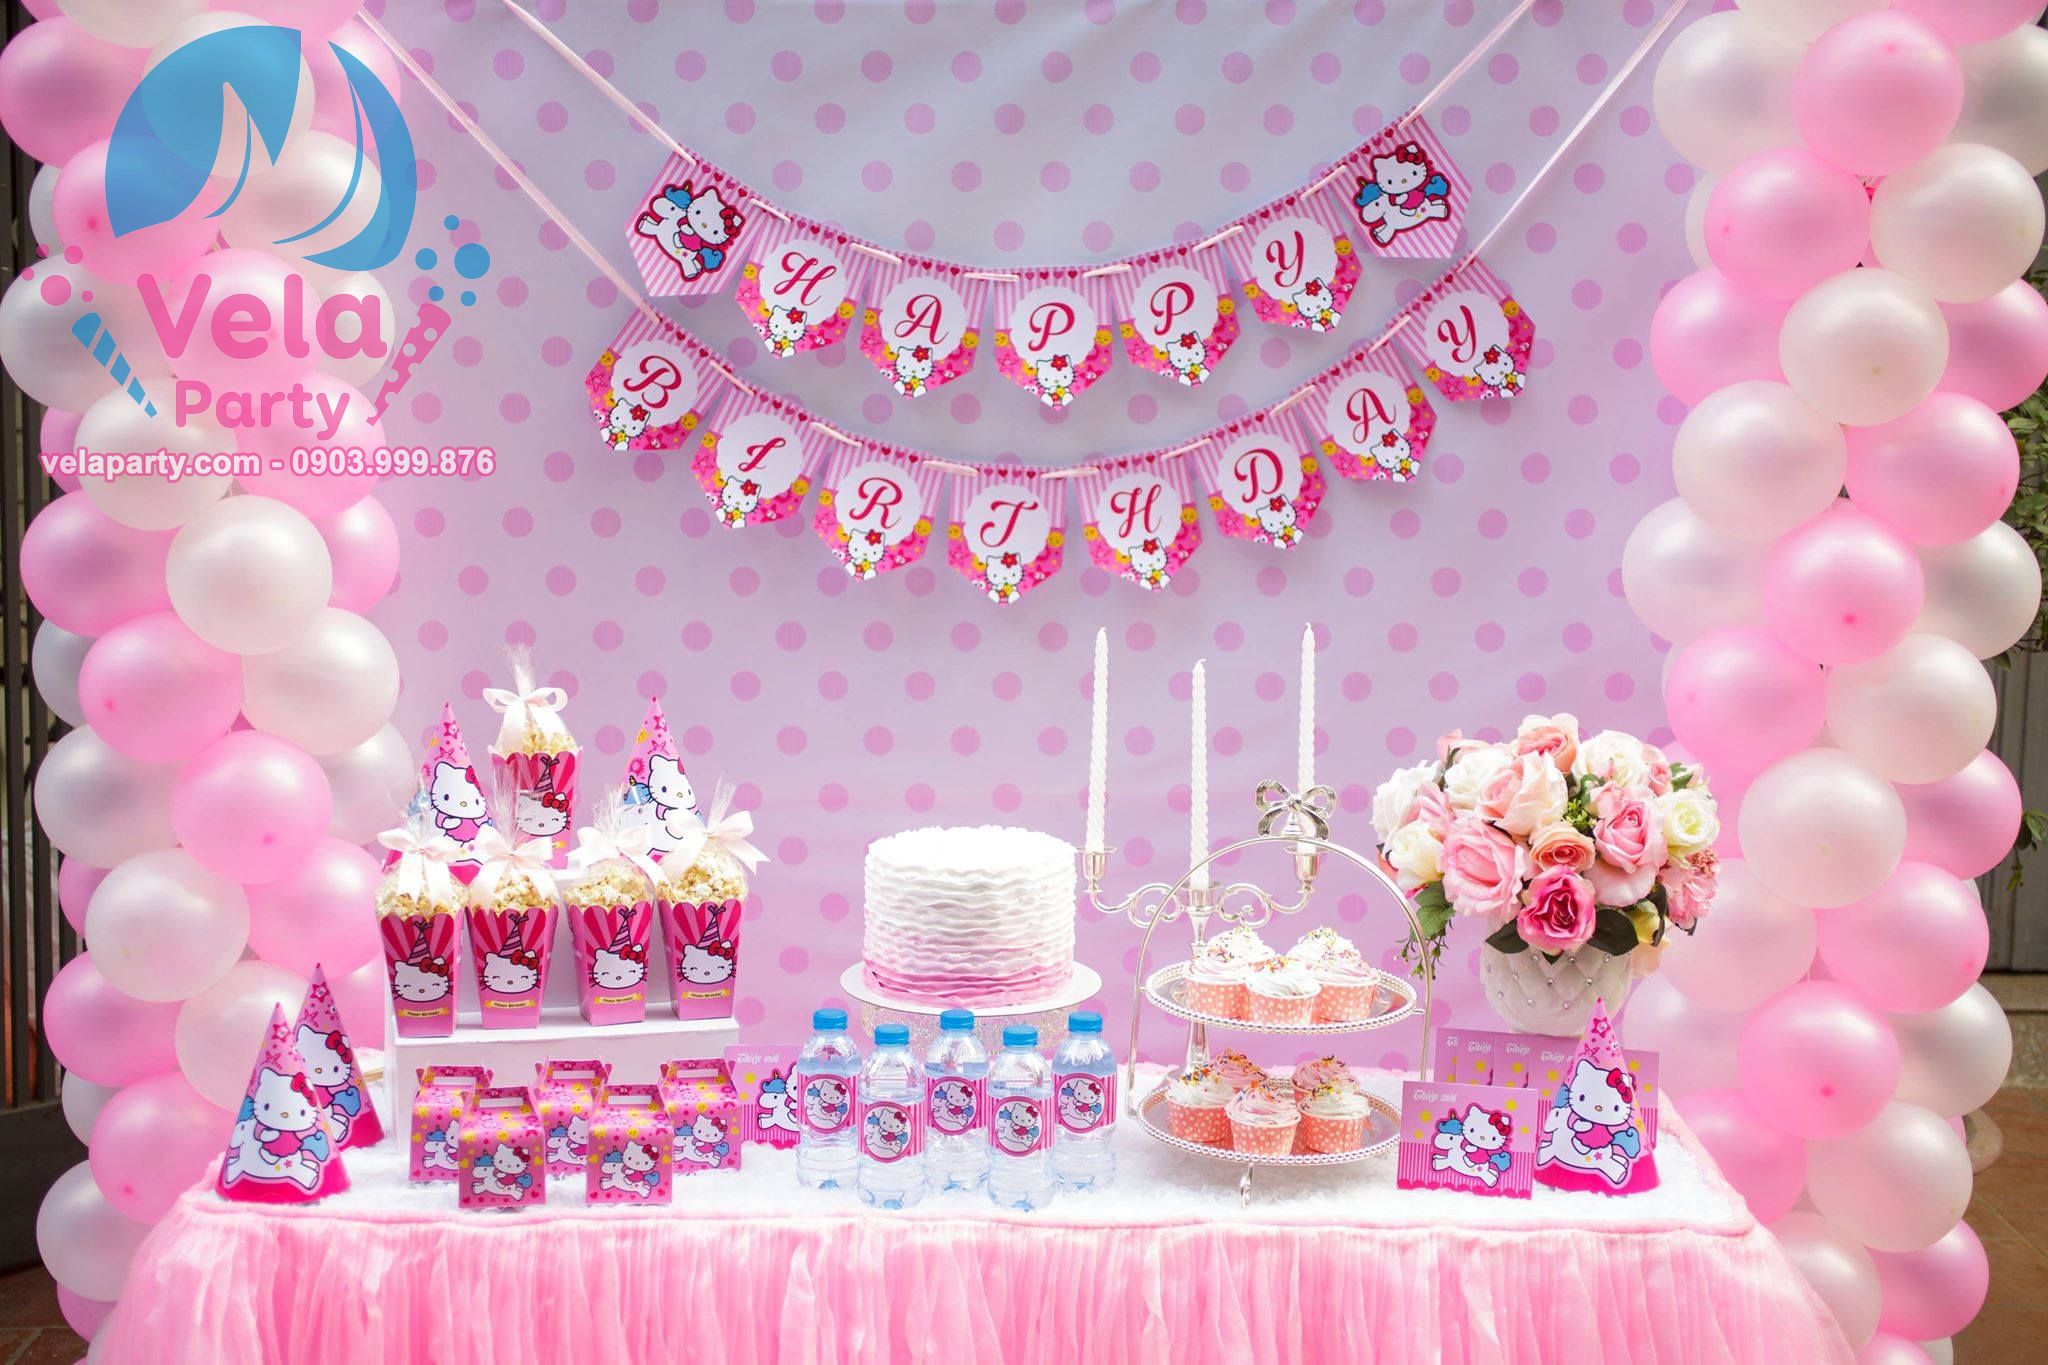 Phụ kiện trang trí tiệc sinh nhật Combo phụ kiện trang trí tiệc sinh nhật  trọn gói  phụ kiện trang trí tiệc sinh nhật cho bé yêu  CTTG  Bóng